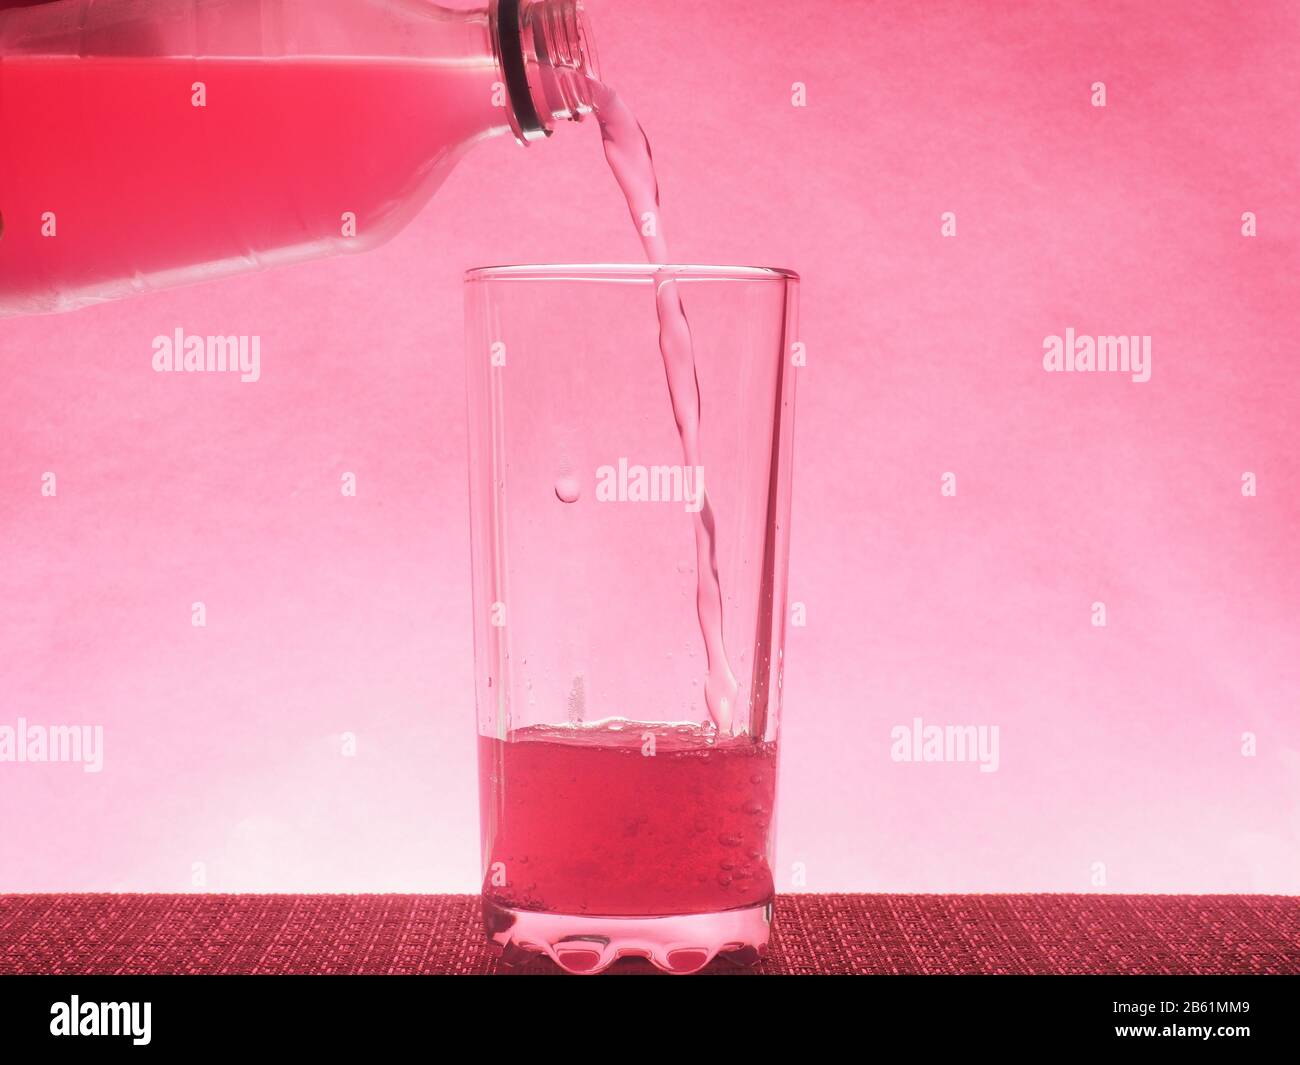 Une boisson gazeuse rose est versée dans un verre transparent. Photo sur un fond rose. Toujours la vie Banque D'Images